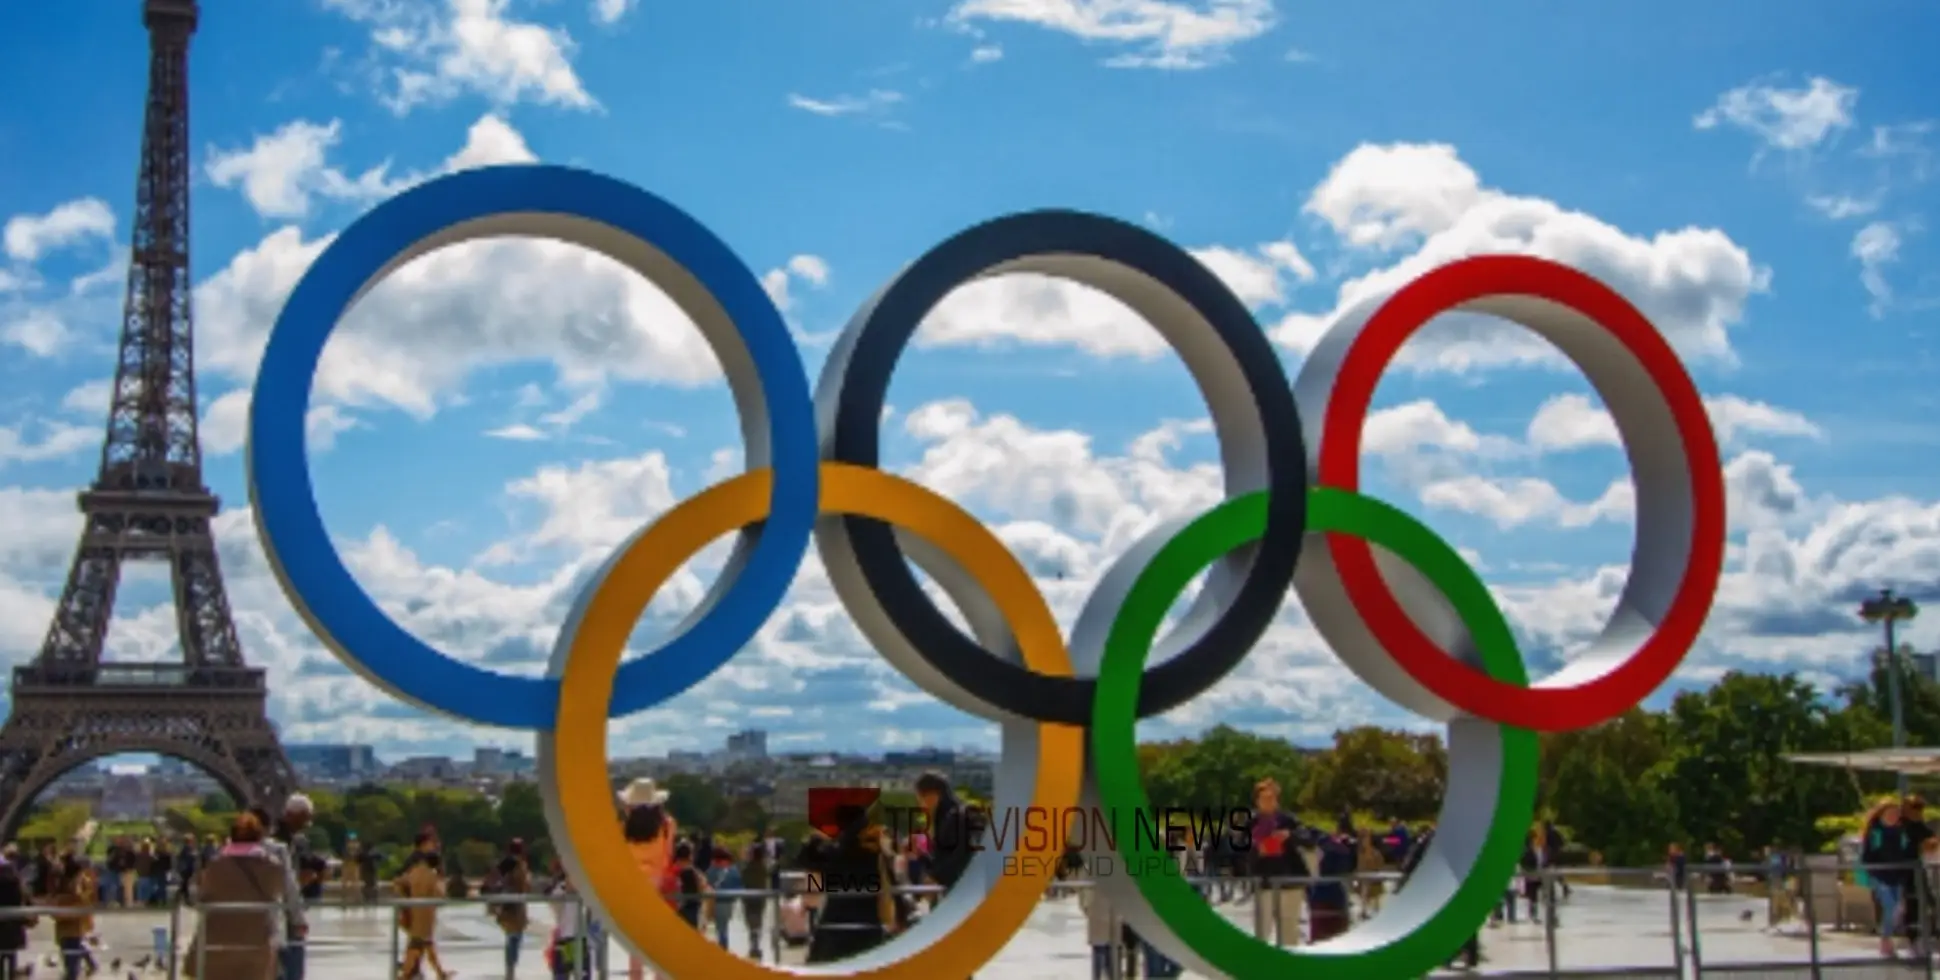 #ParisOlympics2024 | പാരിസ് ഒളിമ്പിക്സ് മത്സരങ്ങൾക്ക് ഇന്ന് തുടക്കം; അർജന്റീനയും സ്പെയിനും കളത്തിലിറങ്ങും 